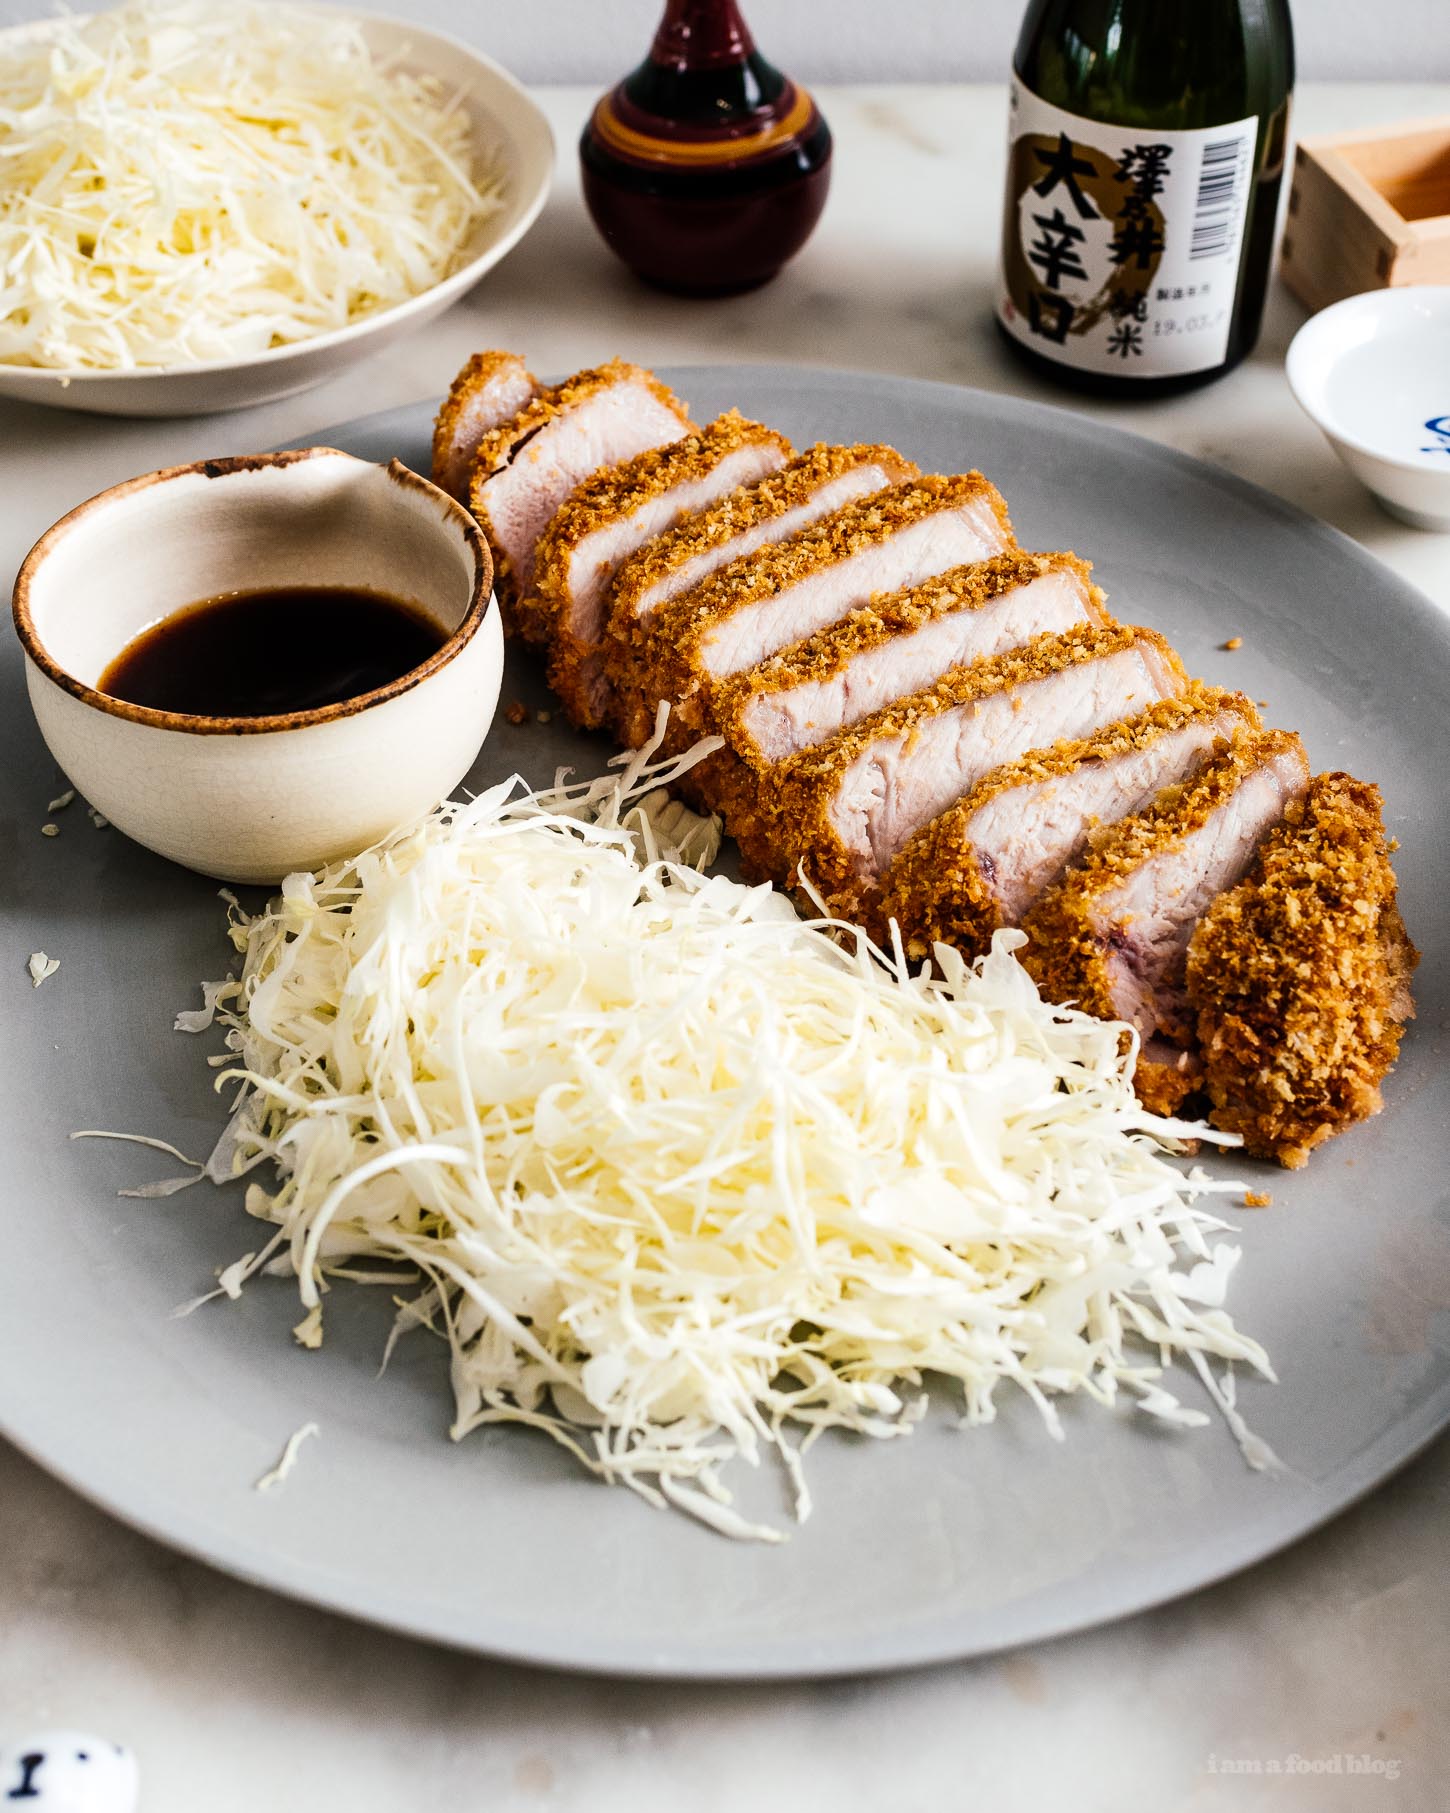 简易烤炉烤猪排:一种超厚、超多汁的猪排，搭配清淡酥脆的煎饼，只烤而不是油炸。#日本料理#日本猪排#猪肉#食谱#烤炉#晚餐#简易晚餐